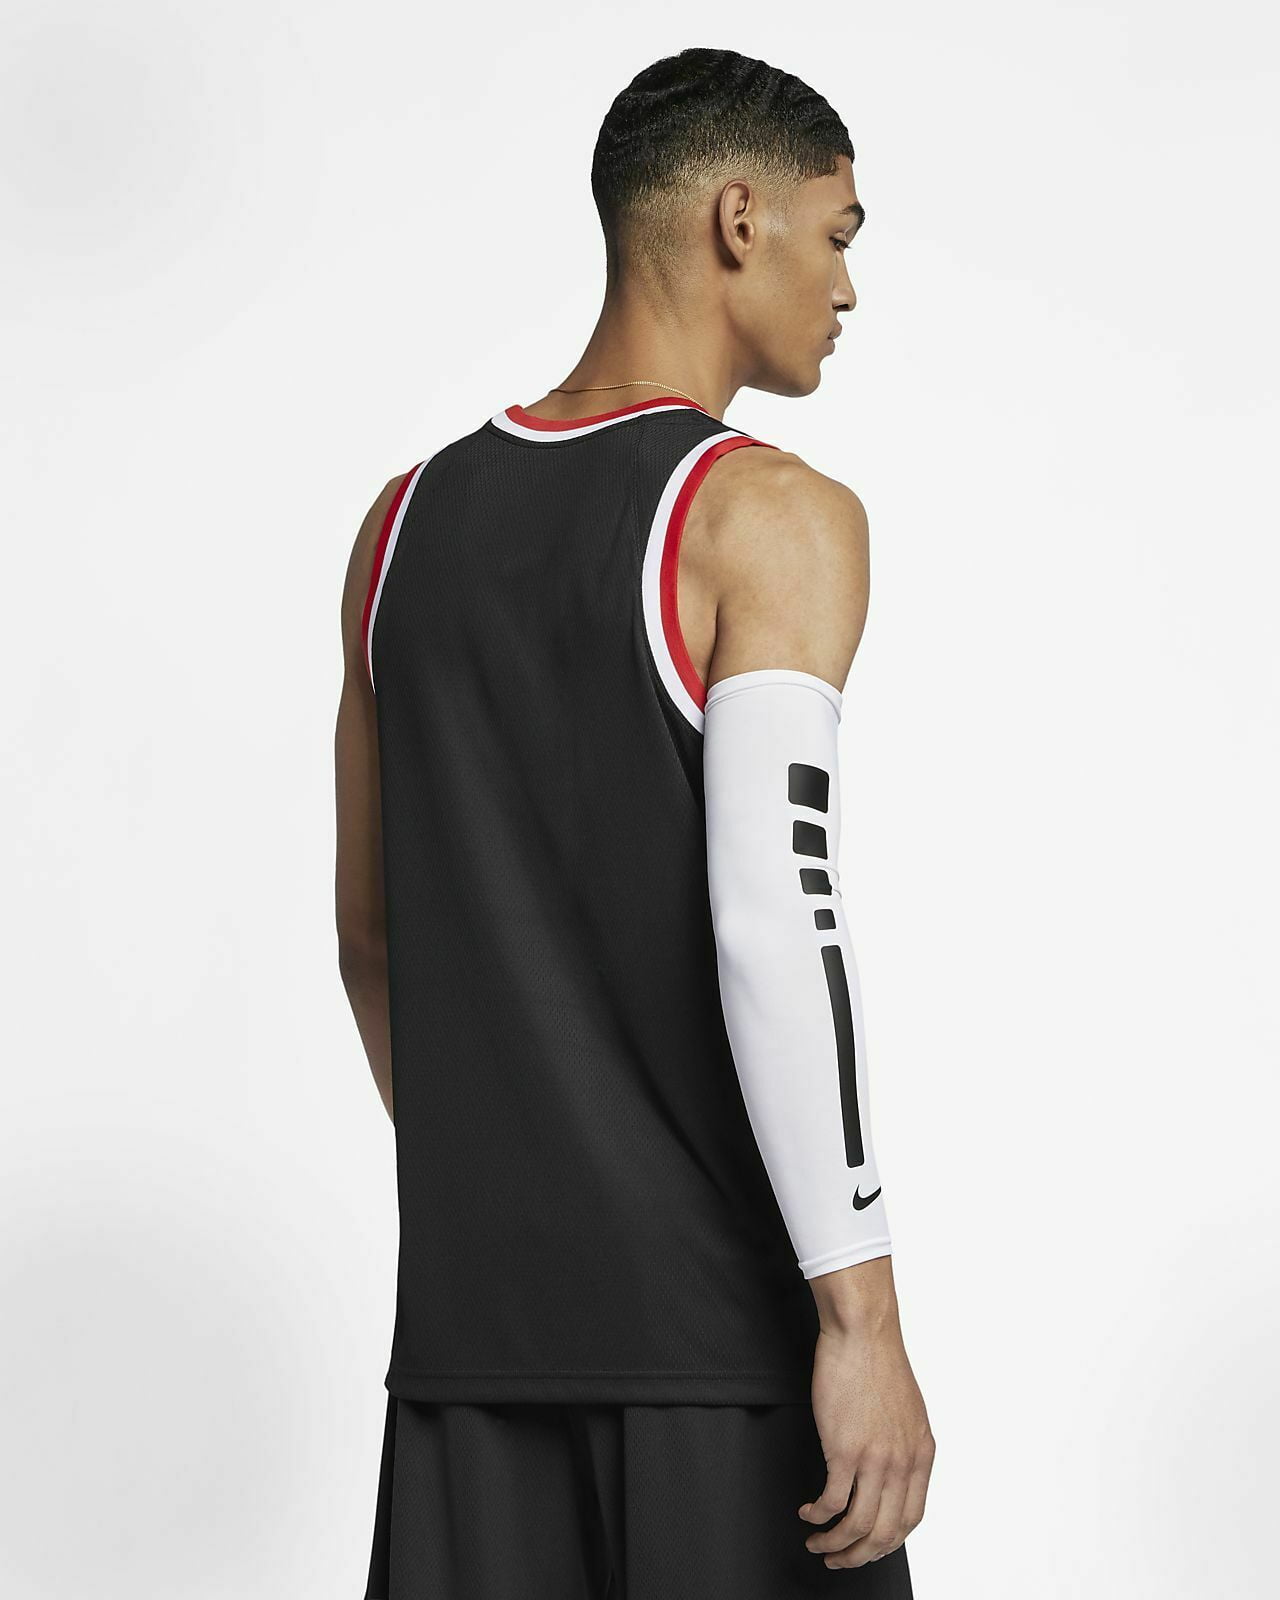 Nike Basketball Dri-Fit Classic Jersey - University Red/Black – SwiSh  basketball